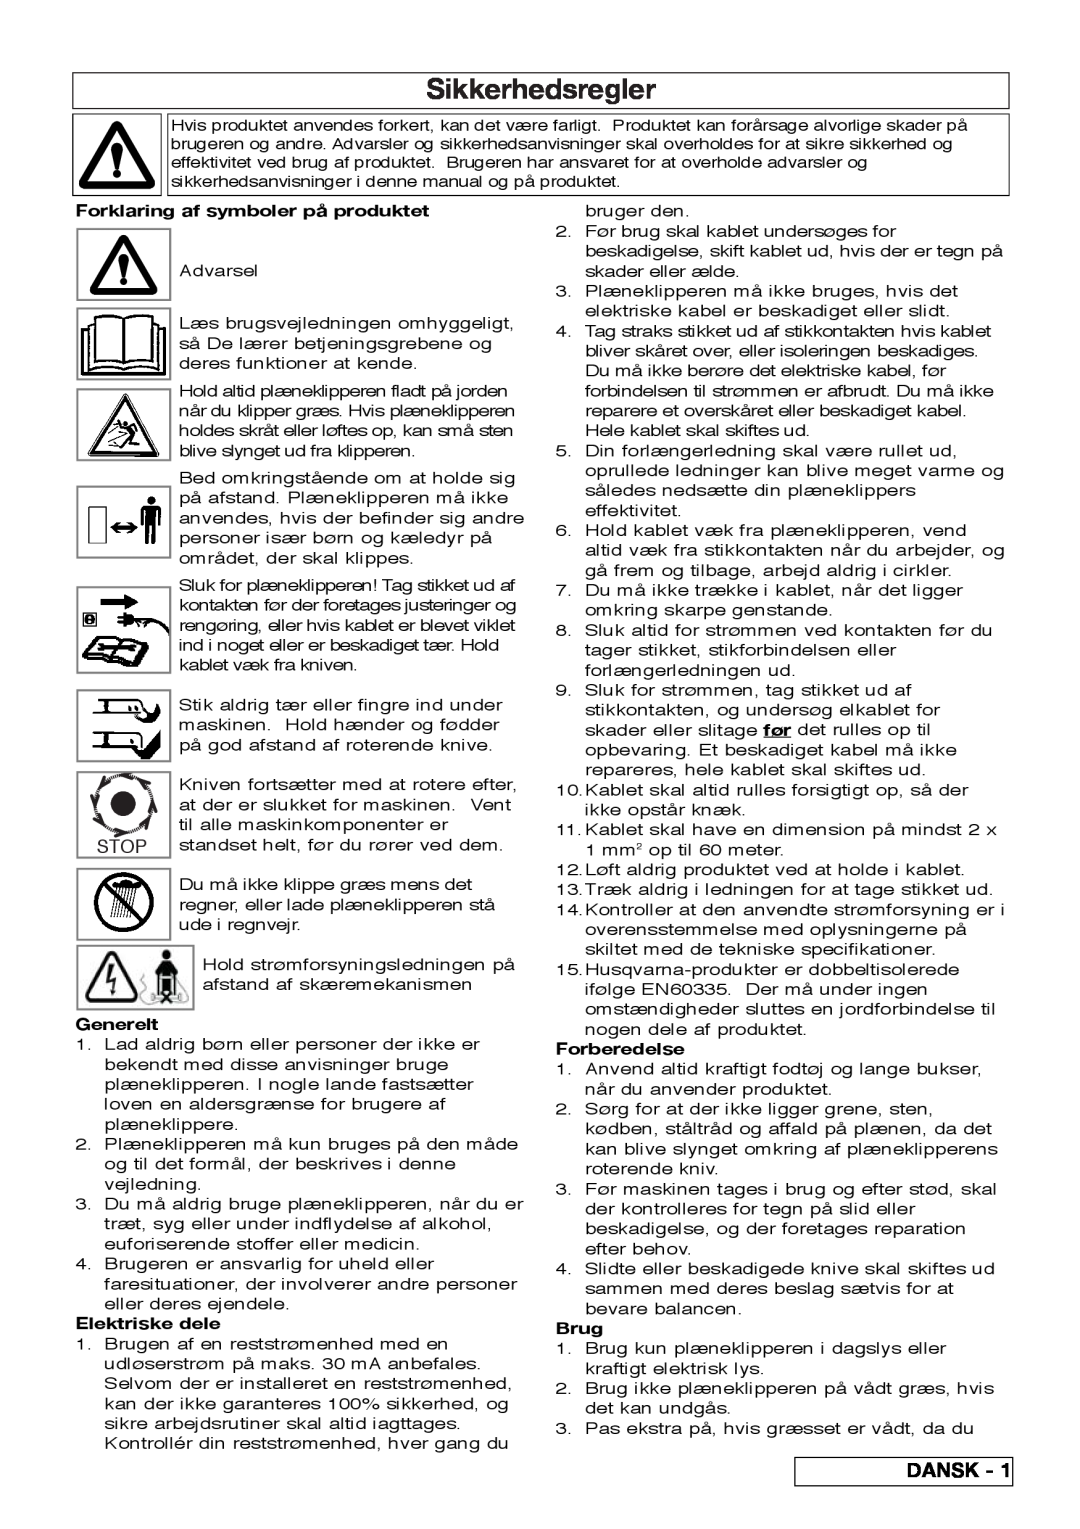 Flymo VM032 Sikkerhedsregler, Dansk, Forklaring af symboler på produktet, Generelt, Elektriske dele, Forberedelse, Brug 